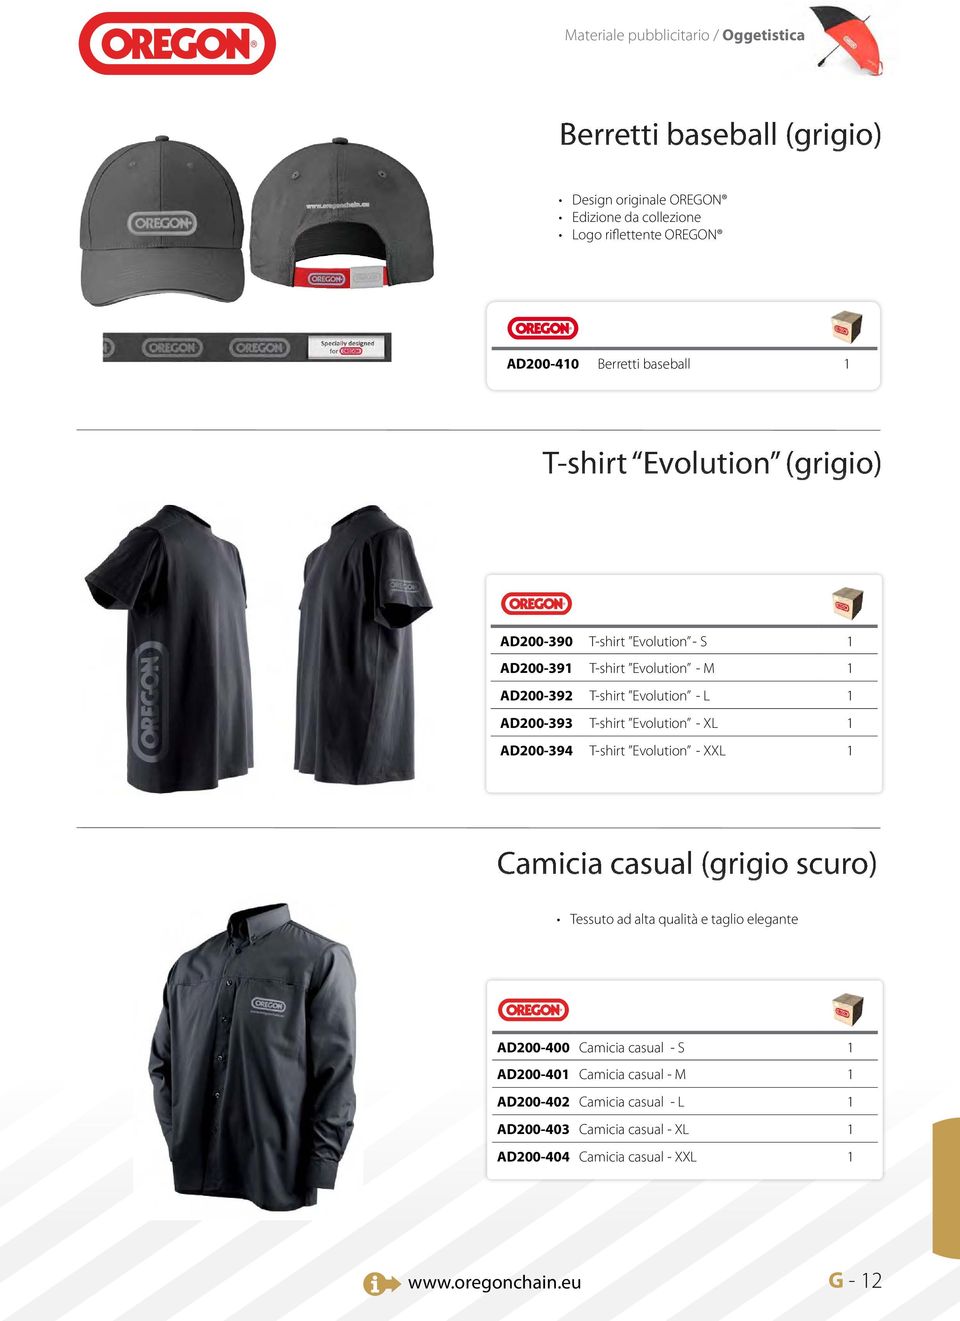 Evolution - L AD200-393 T-shirt Evolution - XL AD200-394 T-shirt Evolution - XXL Camicia casual (grigio scuro) Tessuto ad alta qualità e taglio